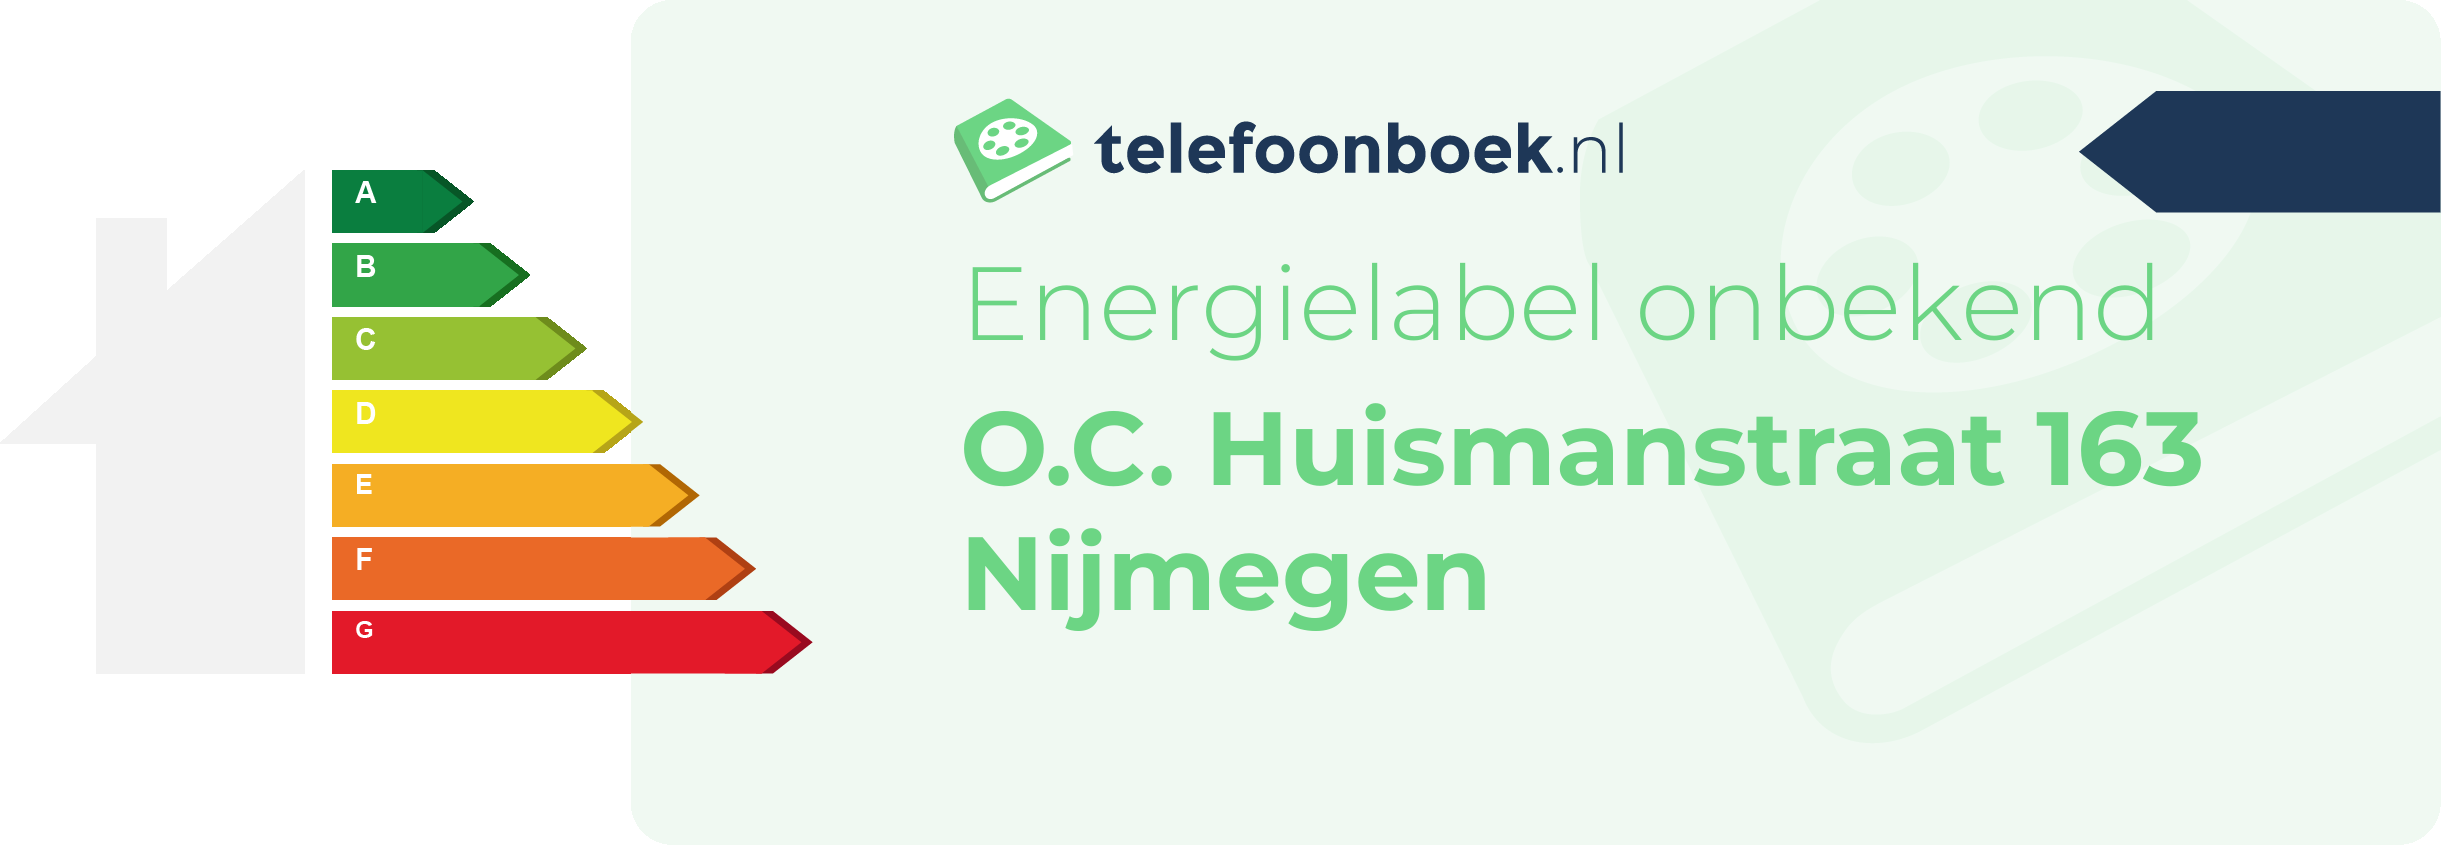 Energielabel O.C. Huismanstraat 163 Nijmegen